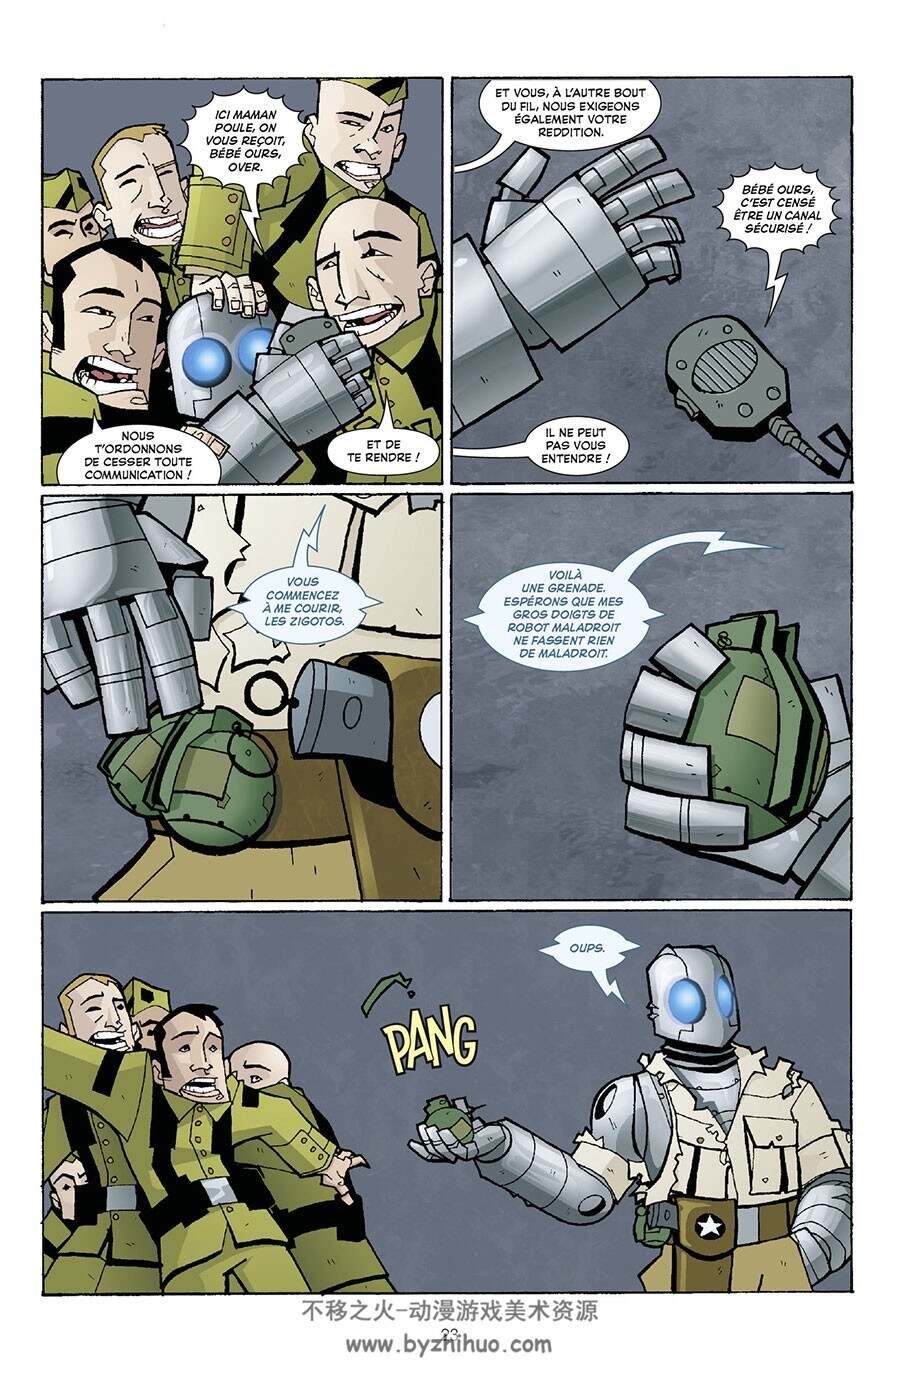 Atomic Robo - La science est un combat 第一册 Brian Clevinger - Scott Wegener - Bas